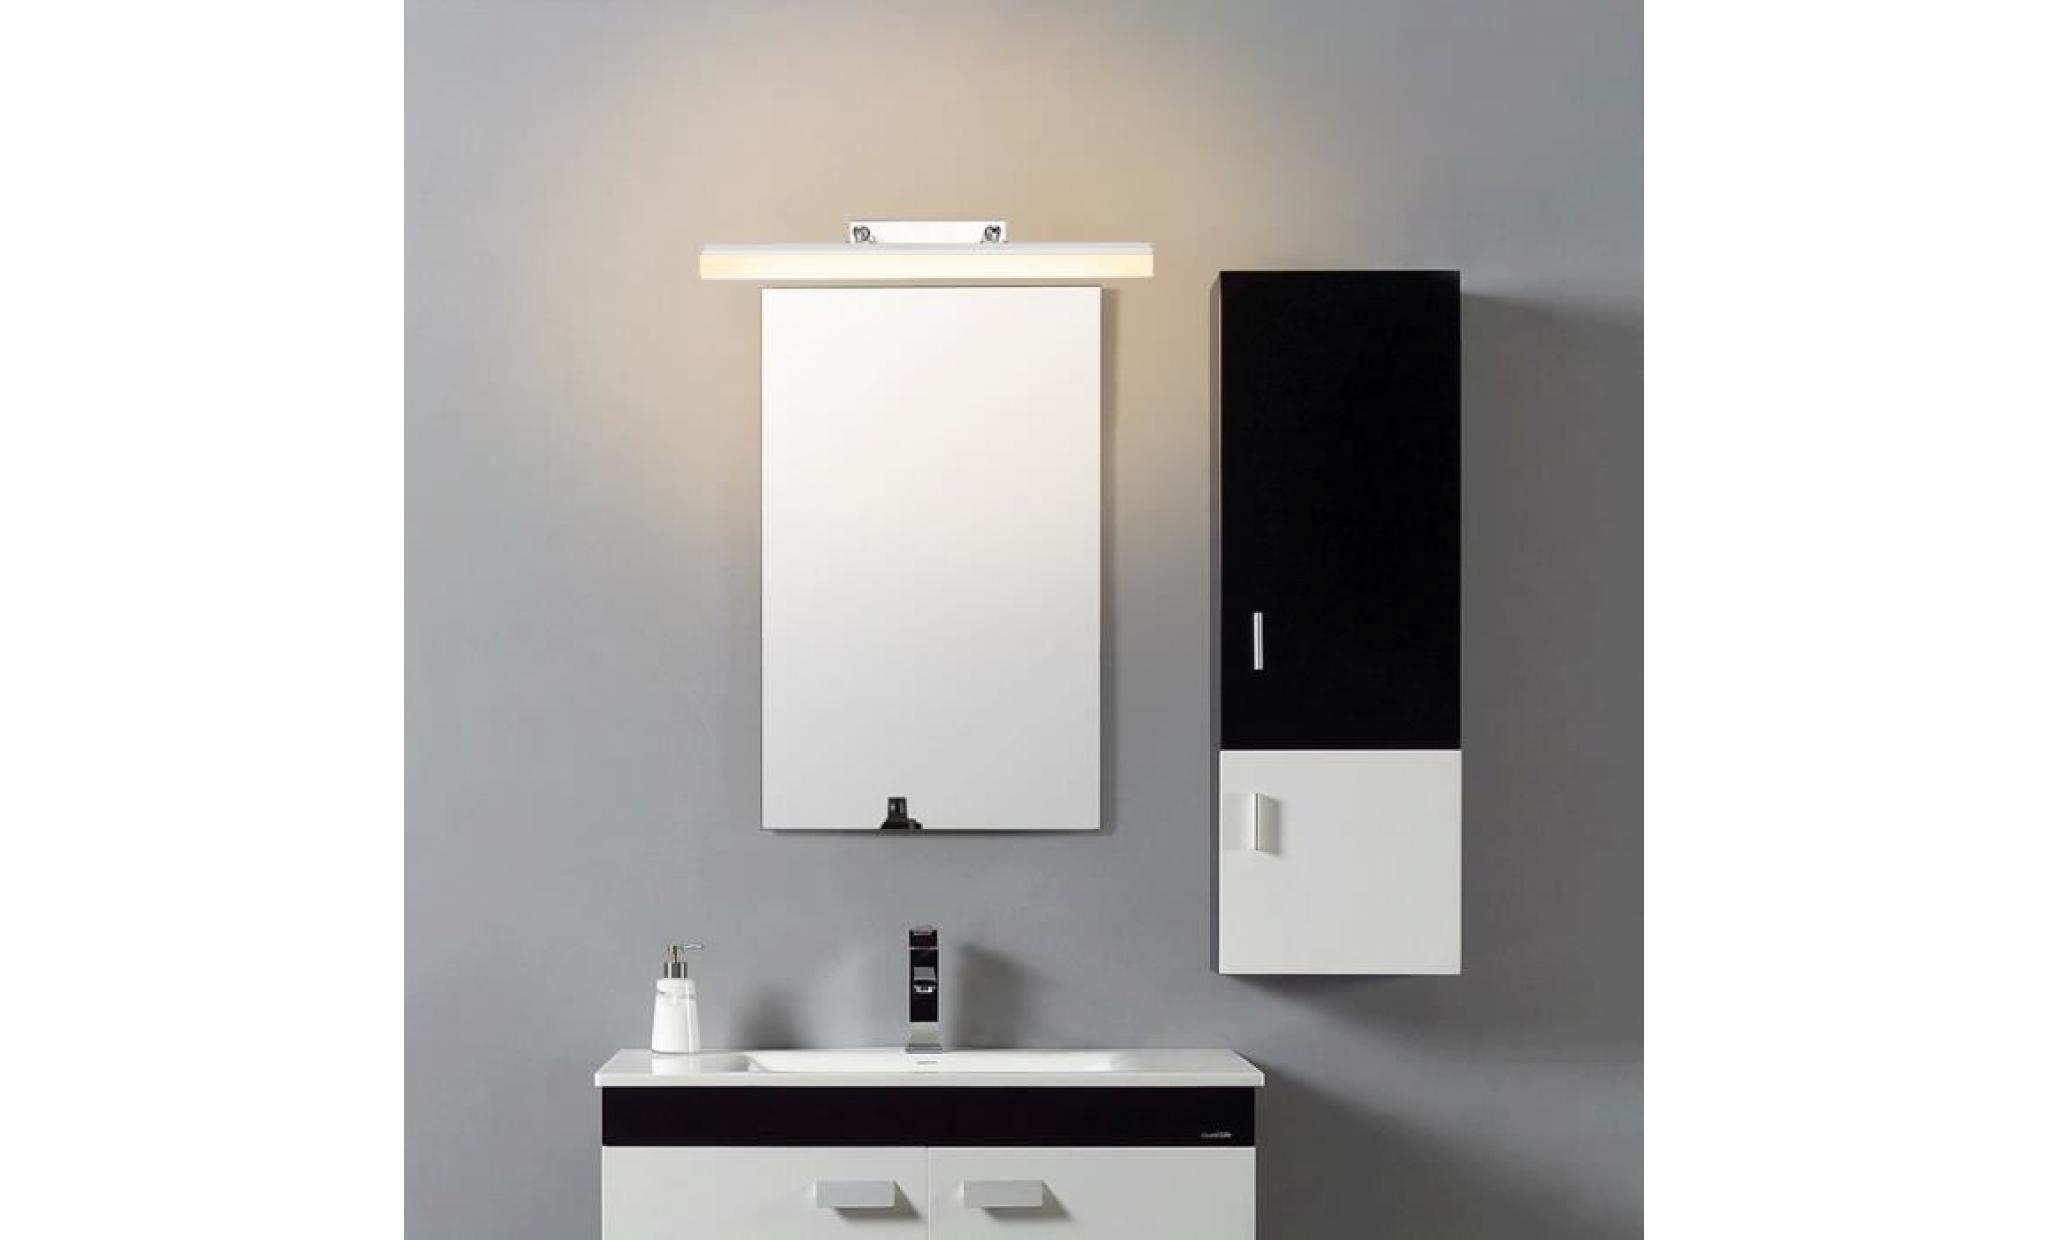 applique de miroir de salle de bain 12w led integré 790 lm blanc chaud acrylique eclairage salle de bain applique murale réglable pas cher